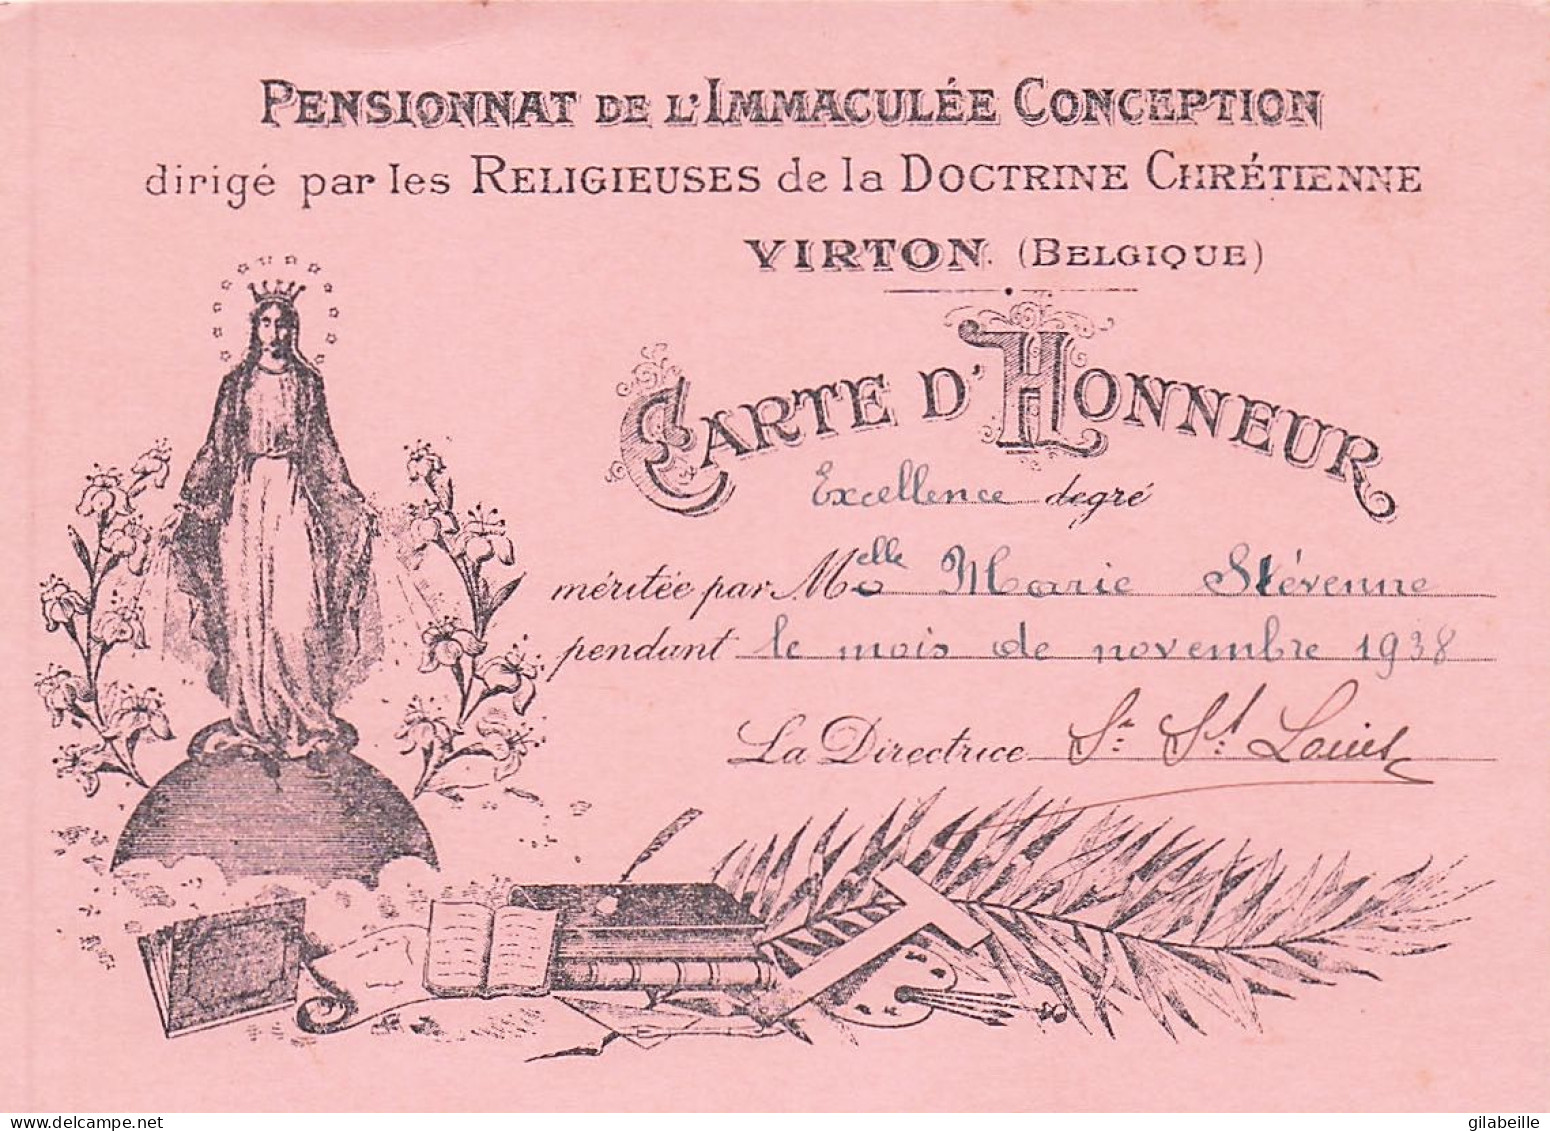 Luxembourg - VIRTON - Carte D'honneurdegré Excellence - Pensionnat De L'immaculé Conception - Novembre 1938 - Diplômes & Bulletins Scolaires